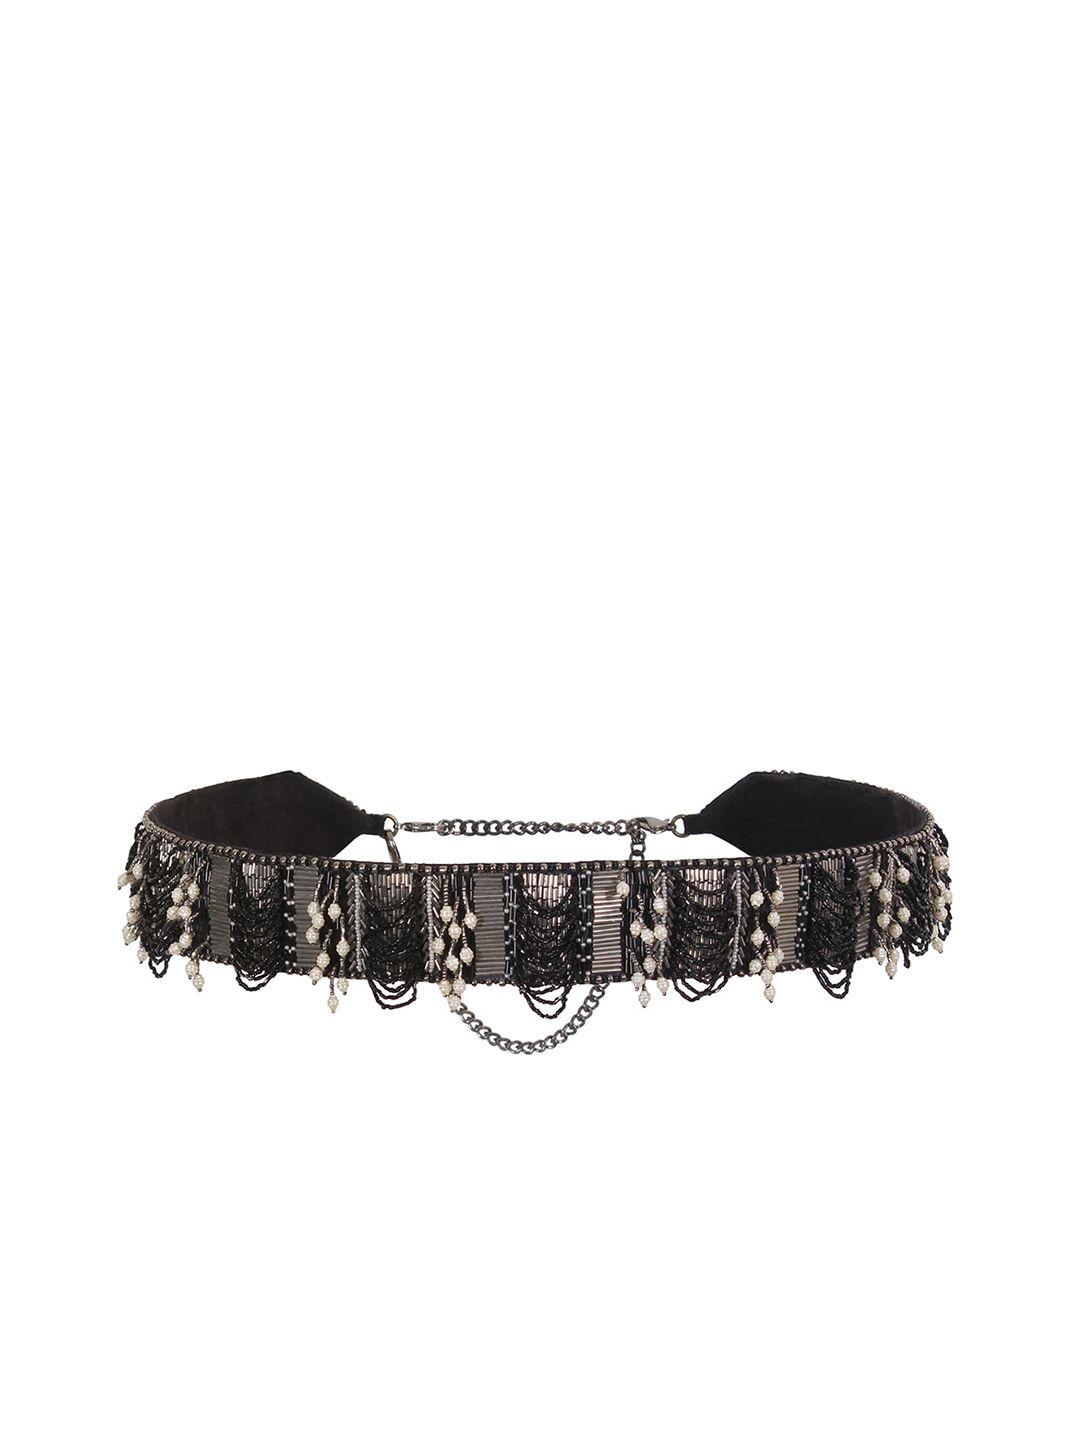 lovetobag women embellished belt